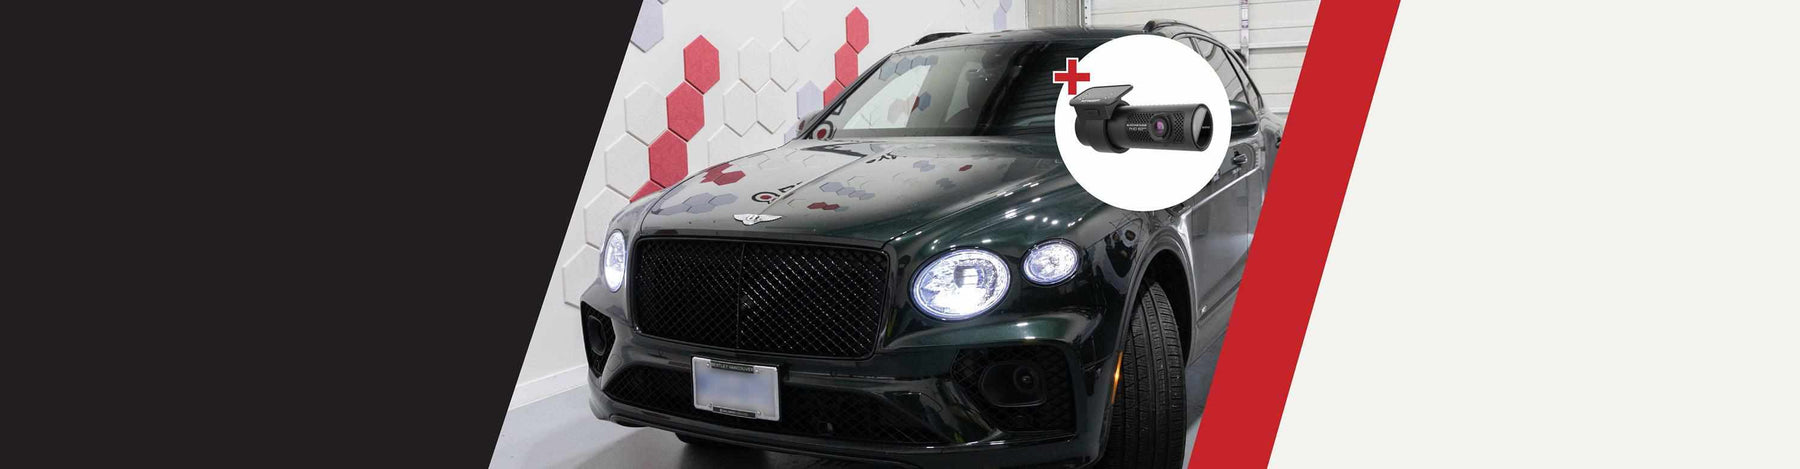 BlackboxMyCar | Dash Cam Installation: 2022 Bentley Bentayga x BlackVue DR750X-3CH -  - BlackboxMyCar Canada